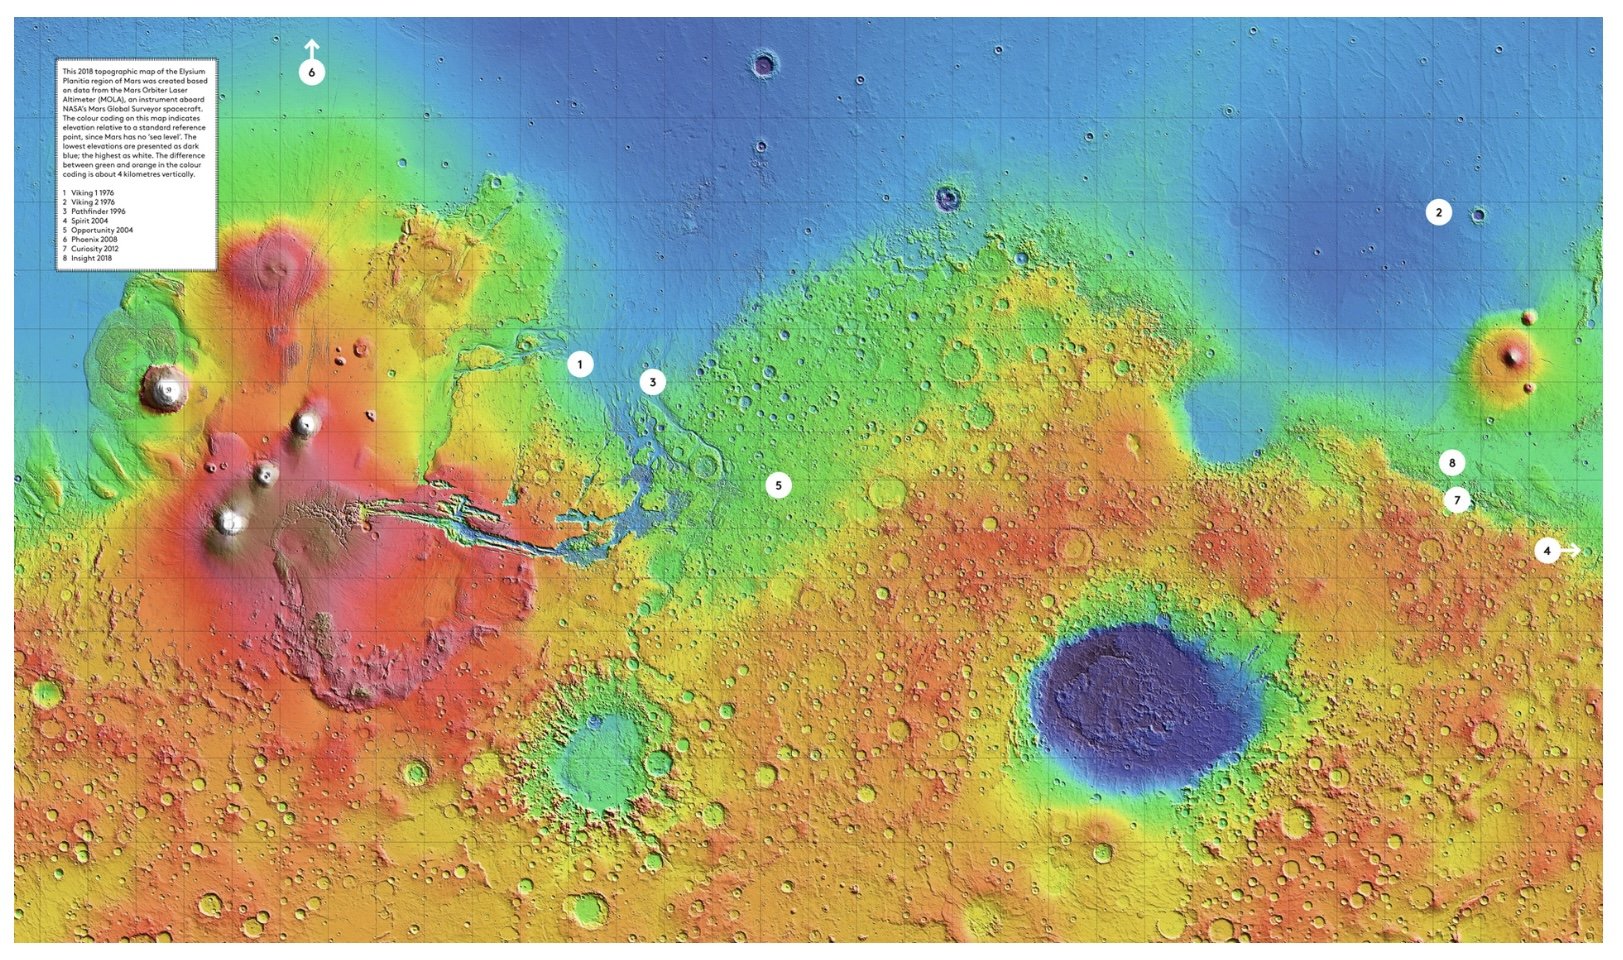 Mars Elysium Planitia.jpeg